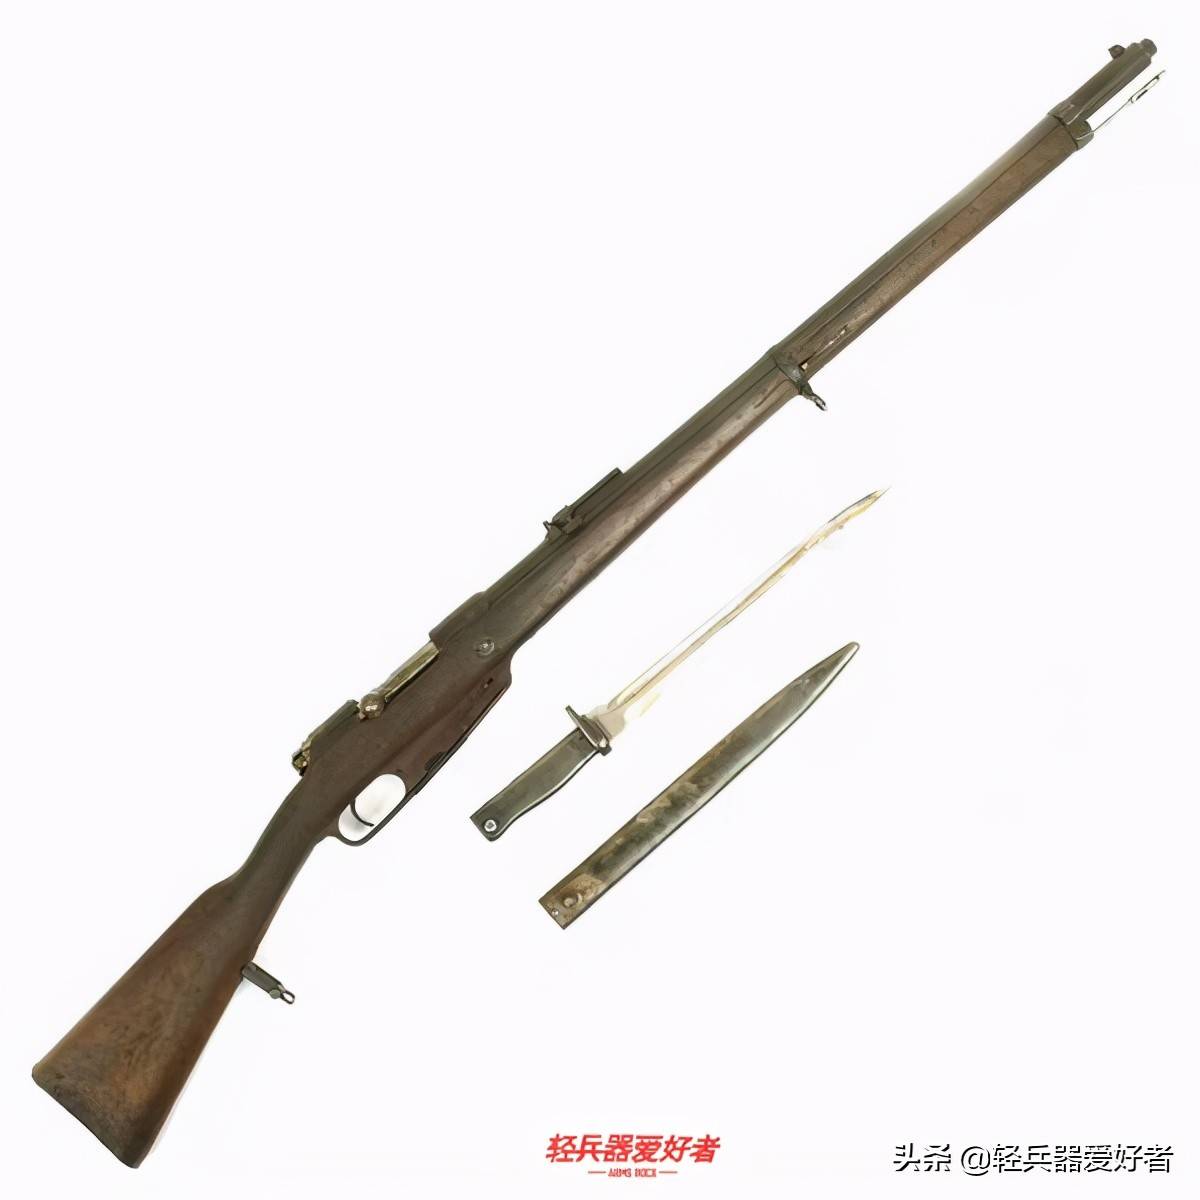 谣言4:没套筒的叫汉阳造,有套筒的叫老套筒,是进口的gew1888型步枪